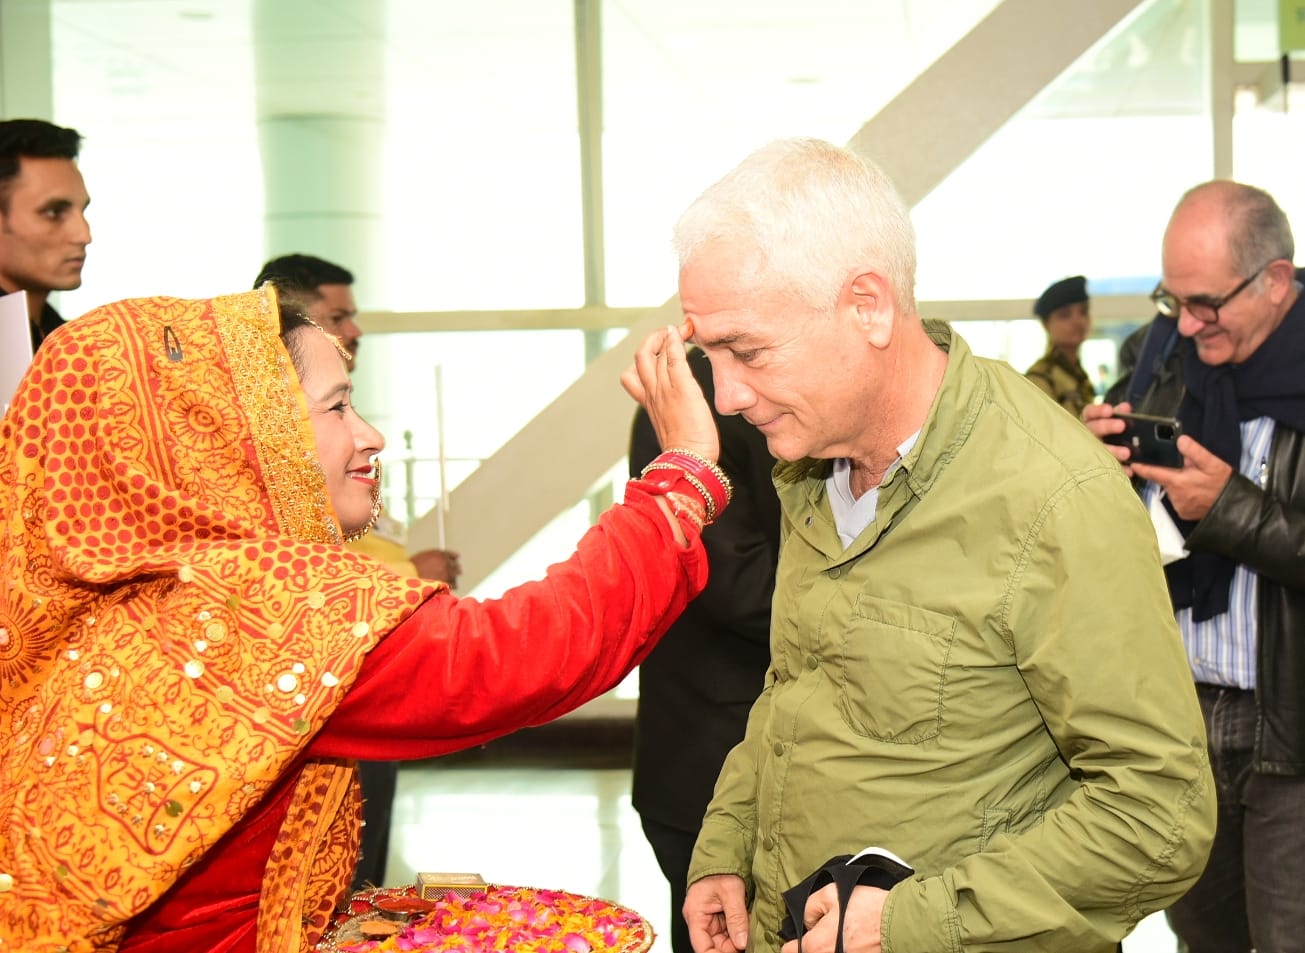 जी-20 बैठक के लिए पहुंचे विदेशी मेहमानों का जौली ग्रांट एयरपोर्ट पर भव्य स्वागत